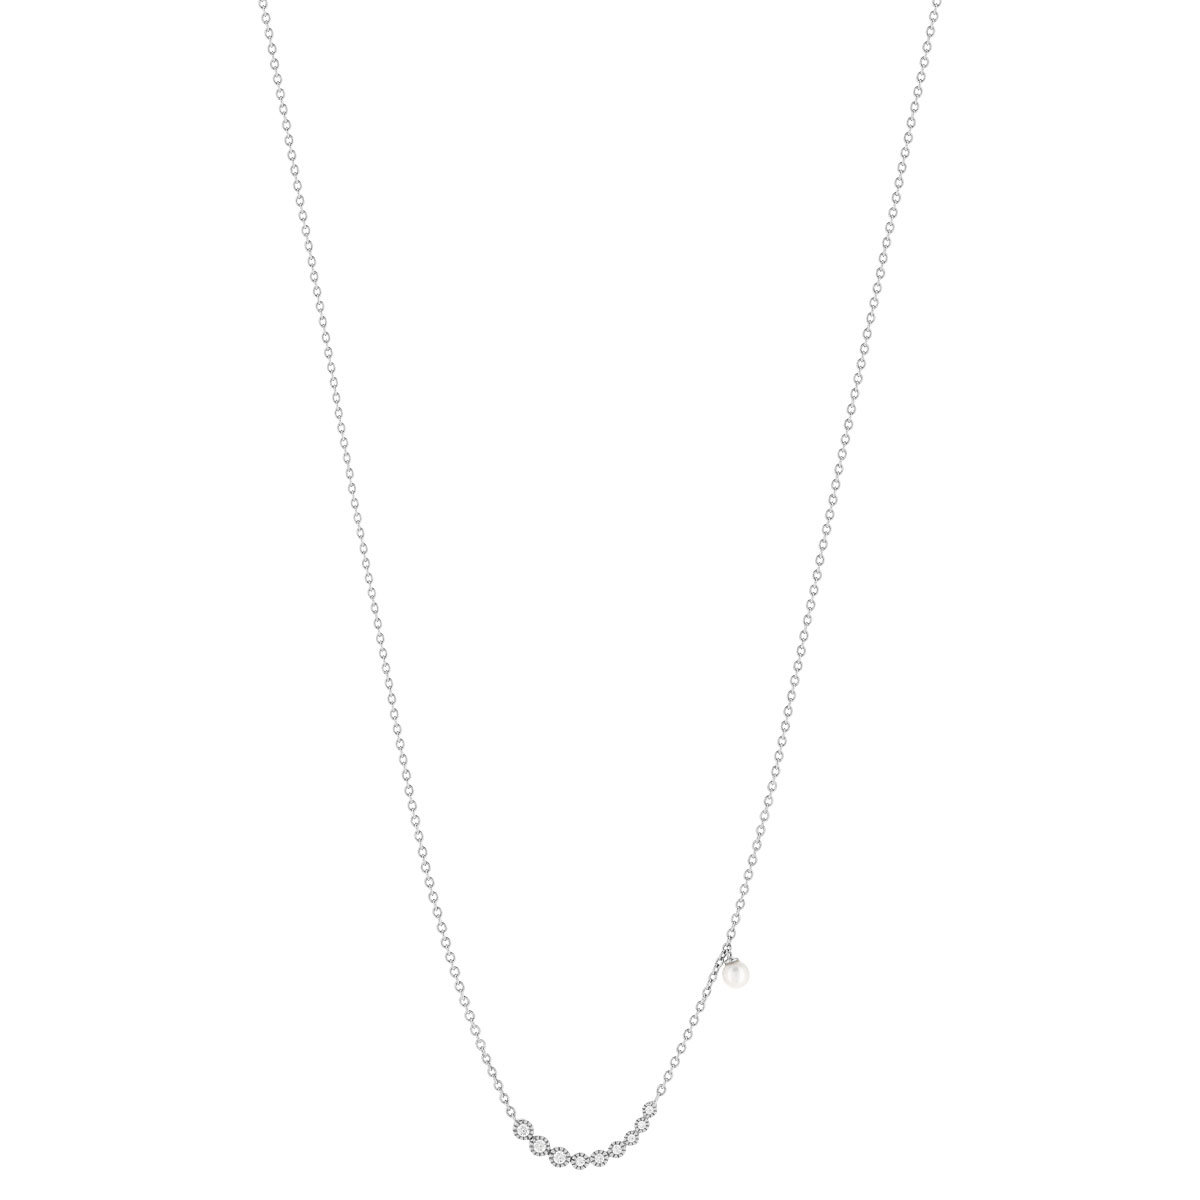 Collier argent 925, perle de culture de Chine et zirconia. Longueur 45 cm. - vue 2